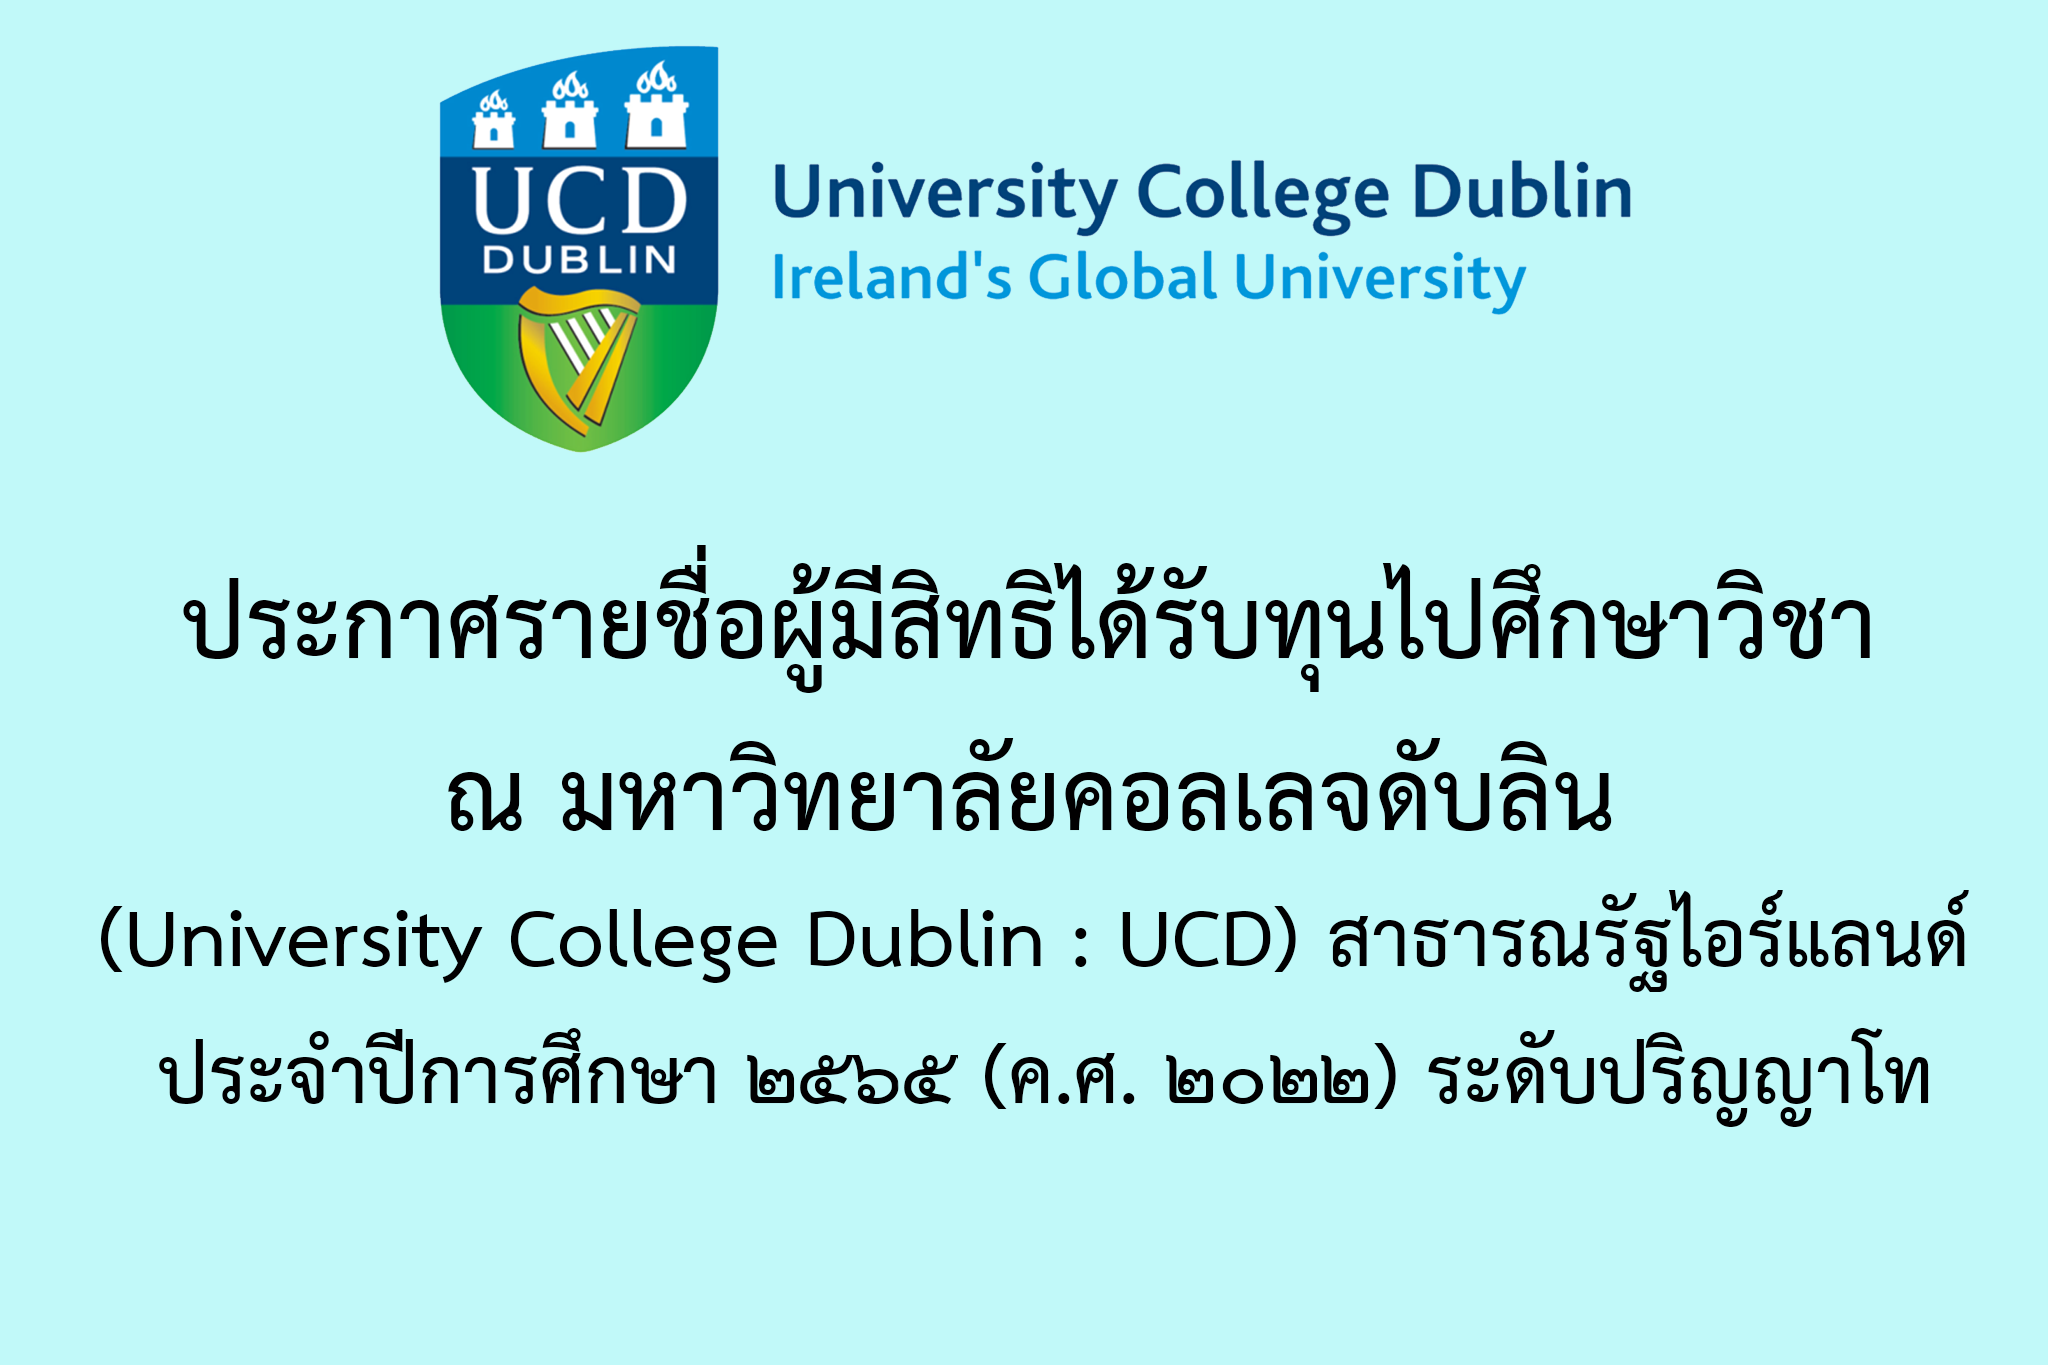 ประกาศรายชื่อผู้มีสิทธิได้รับทุนไปศึกษาวิชา ณ มหาวิทยาลัยคอลเลจดับลิน (University College Dublin : UCD) สาธารณรัฐไอร์แลนด์ ประจำปีการศึกษา ๒๕๖๕ (ค.ศ. ๒๐๒๒) ระดับปริญญาโท 